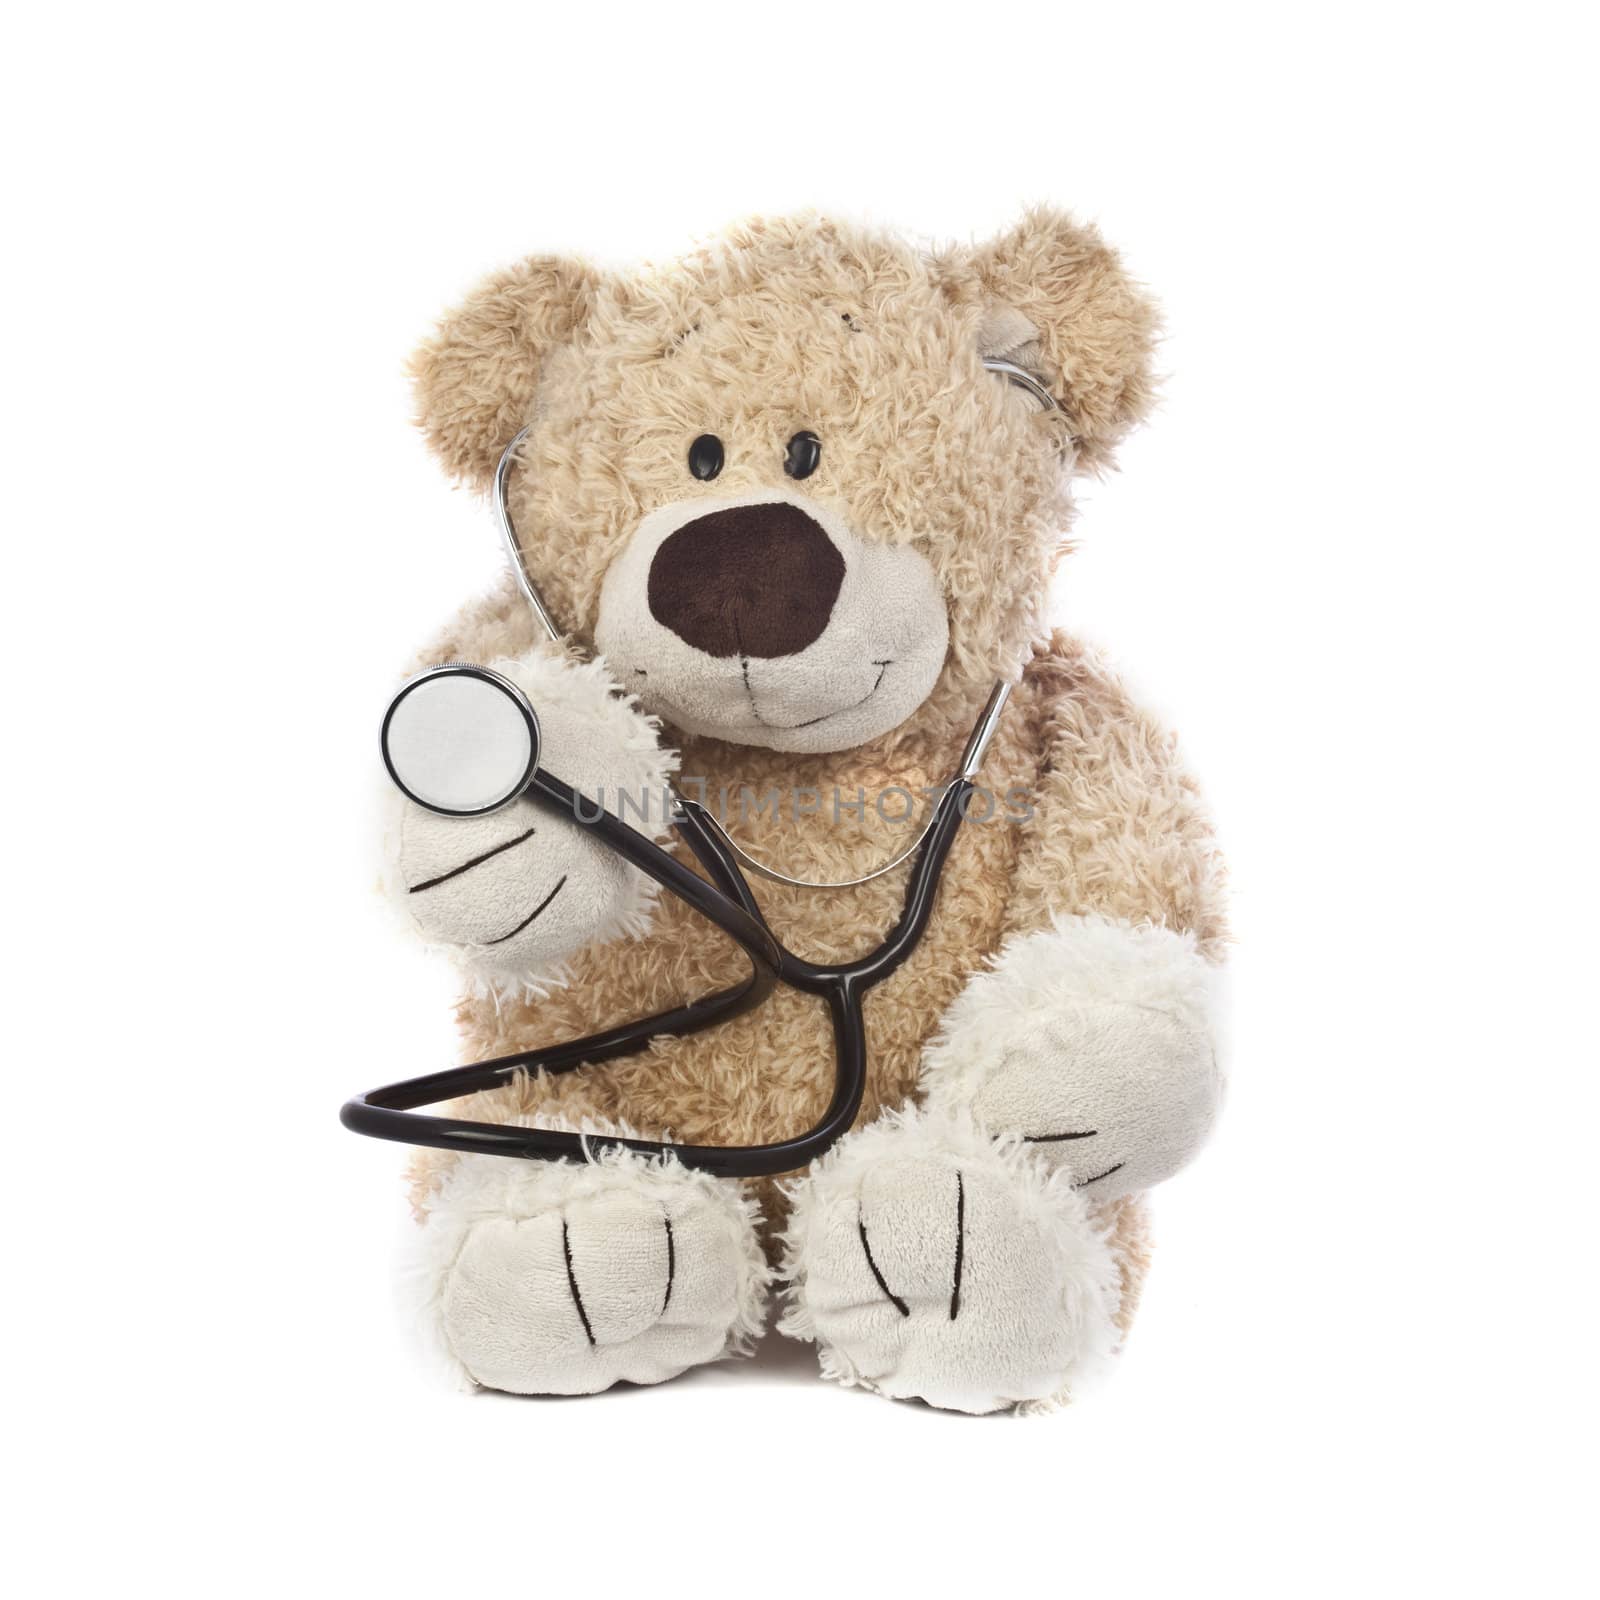 Doctor Teddy Bear by Daniel_Wiedemann